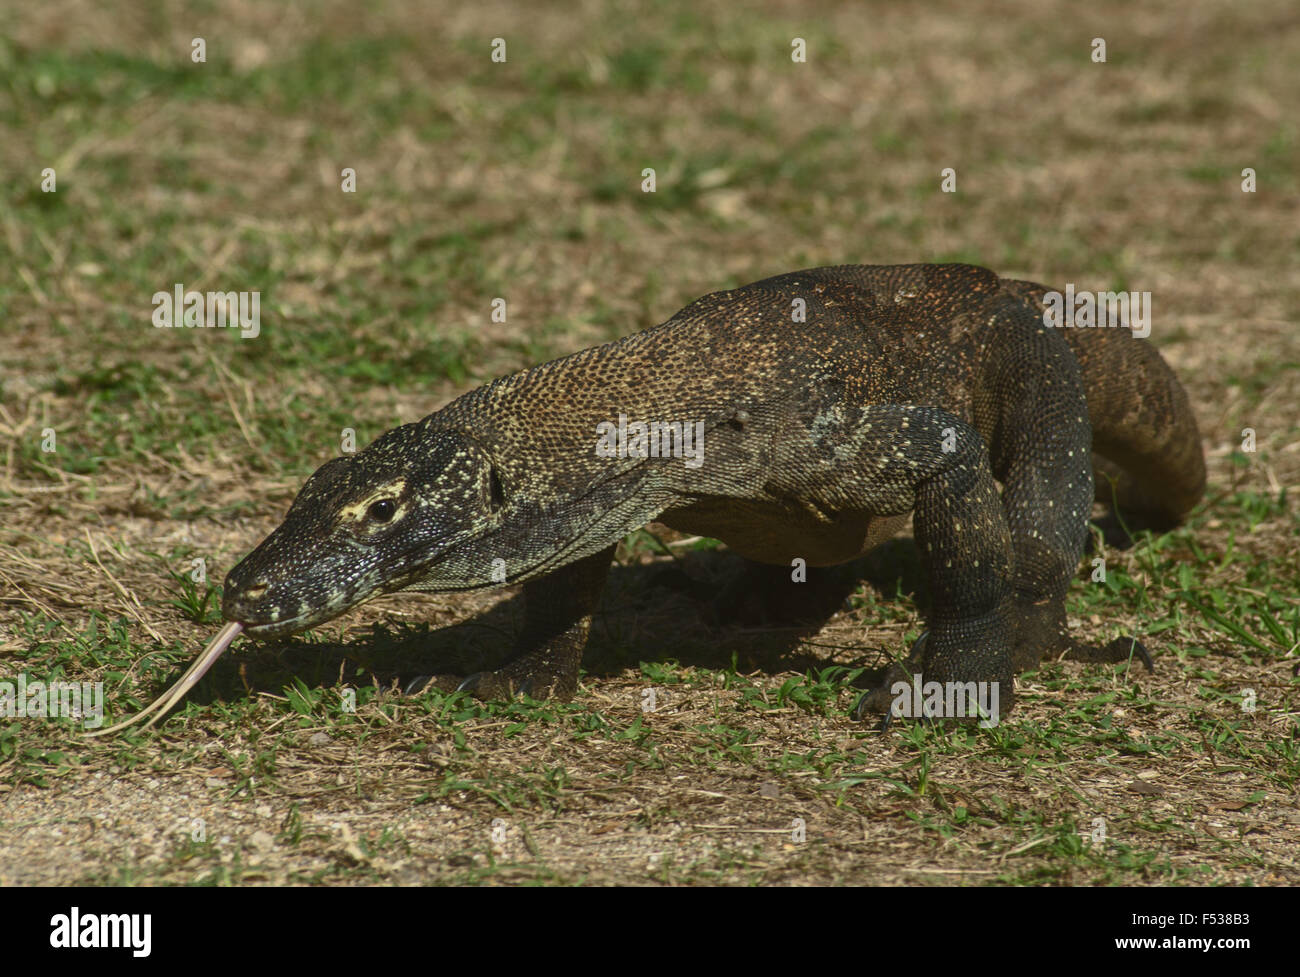 Drago di Komodo, Varanus komodoensis, aggirava con la sua lingua biforcuta il campionamento dell'aria. Isola di Rinca, vicino all isola di Komodo, Indones Foto Stock